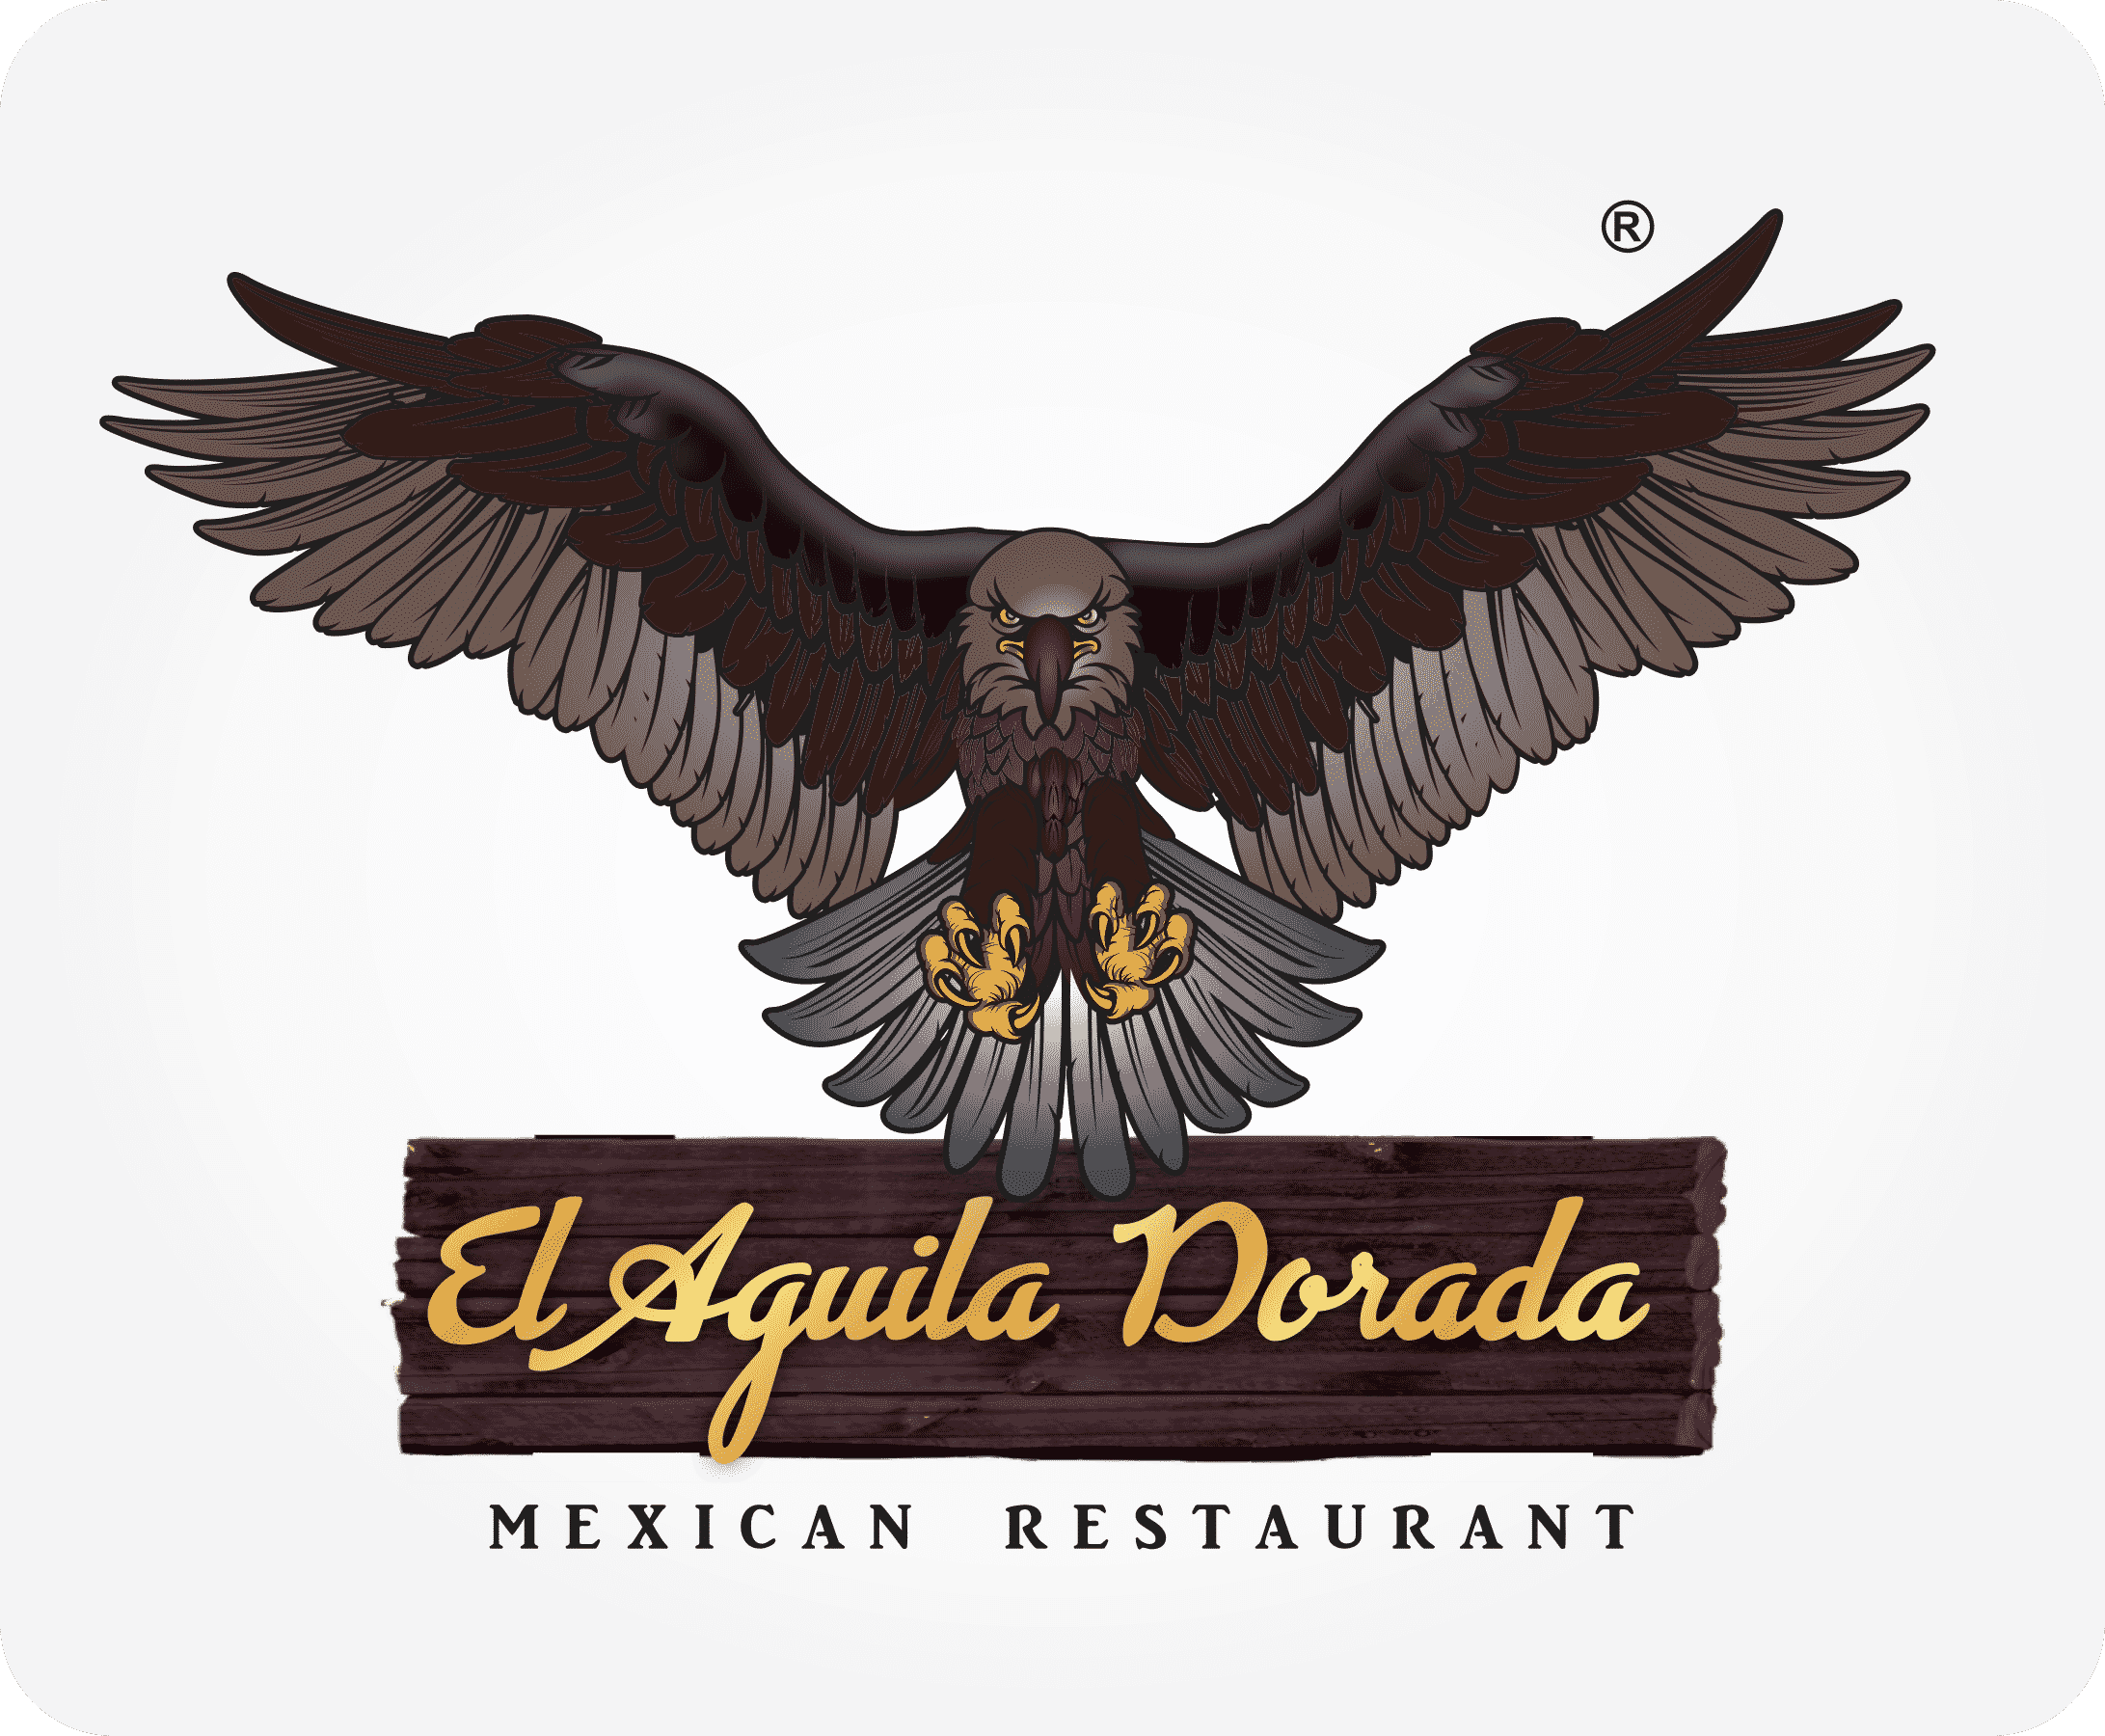 El Aguila Dorada Mexican Restaurant